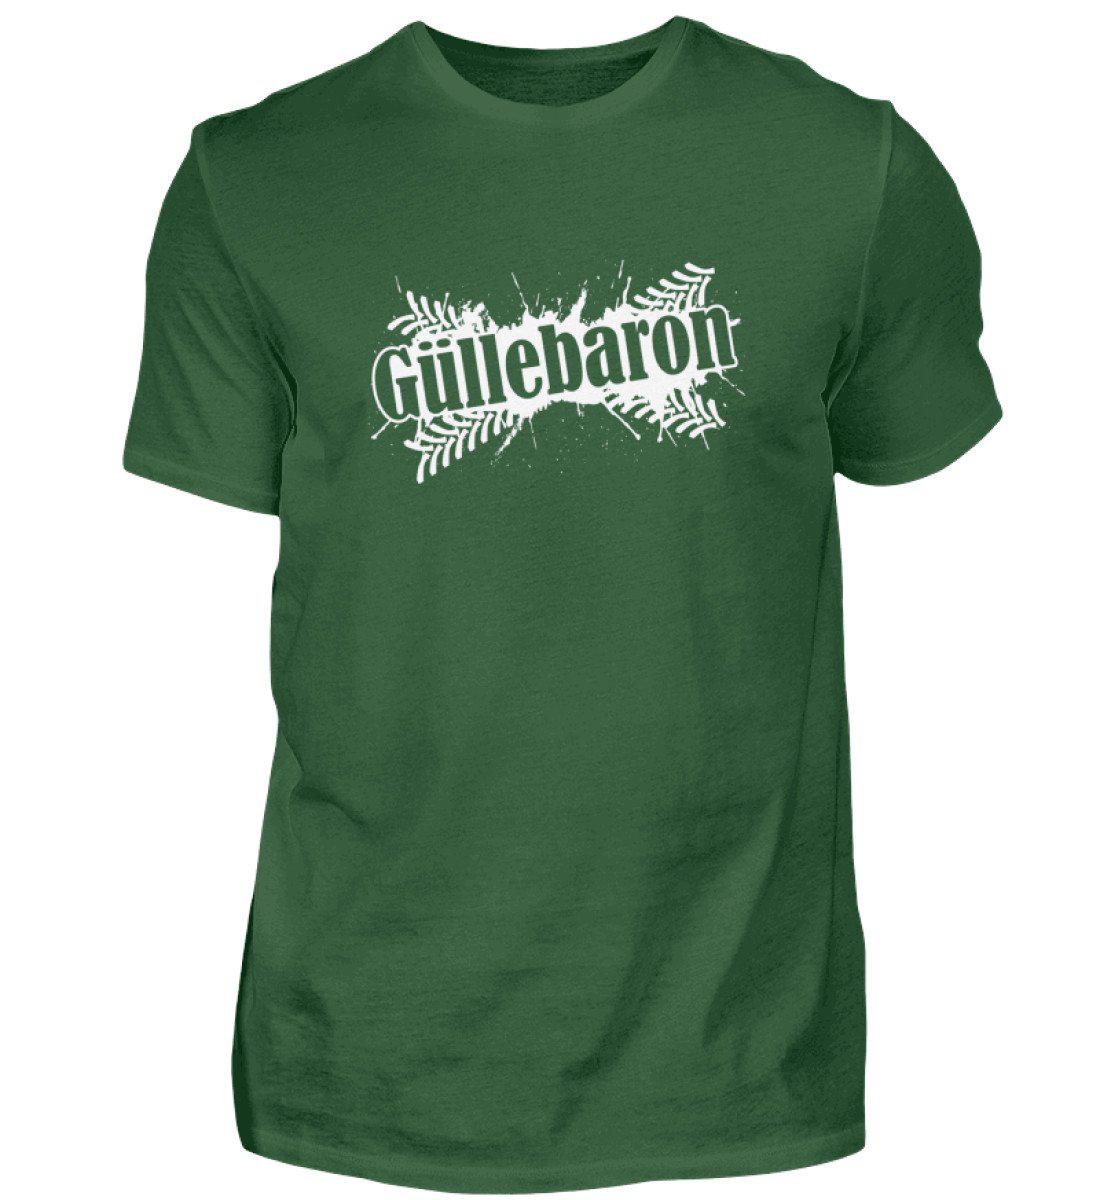 Güllebaron · Herren T-Shirt-Herren Basic T-Shirt-Bottle Green-S-Agrarstarz